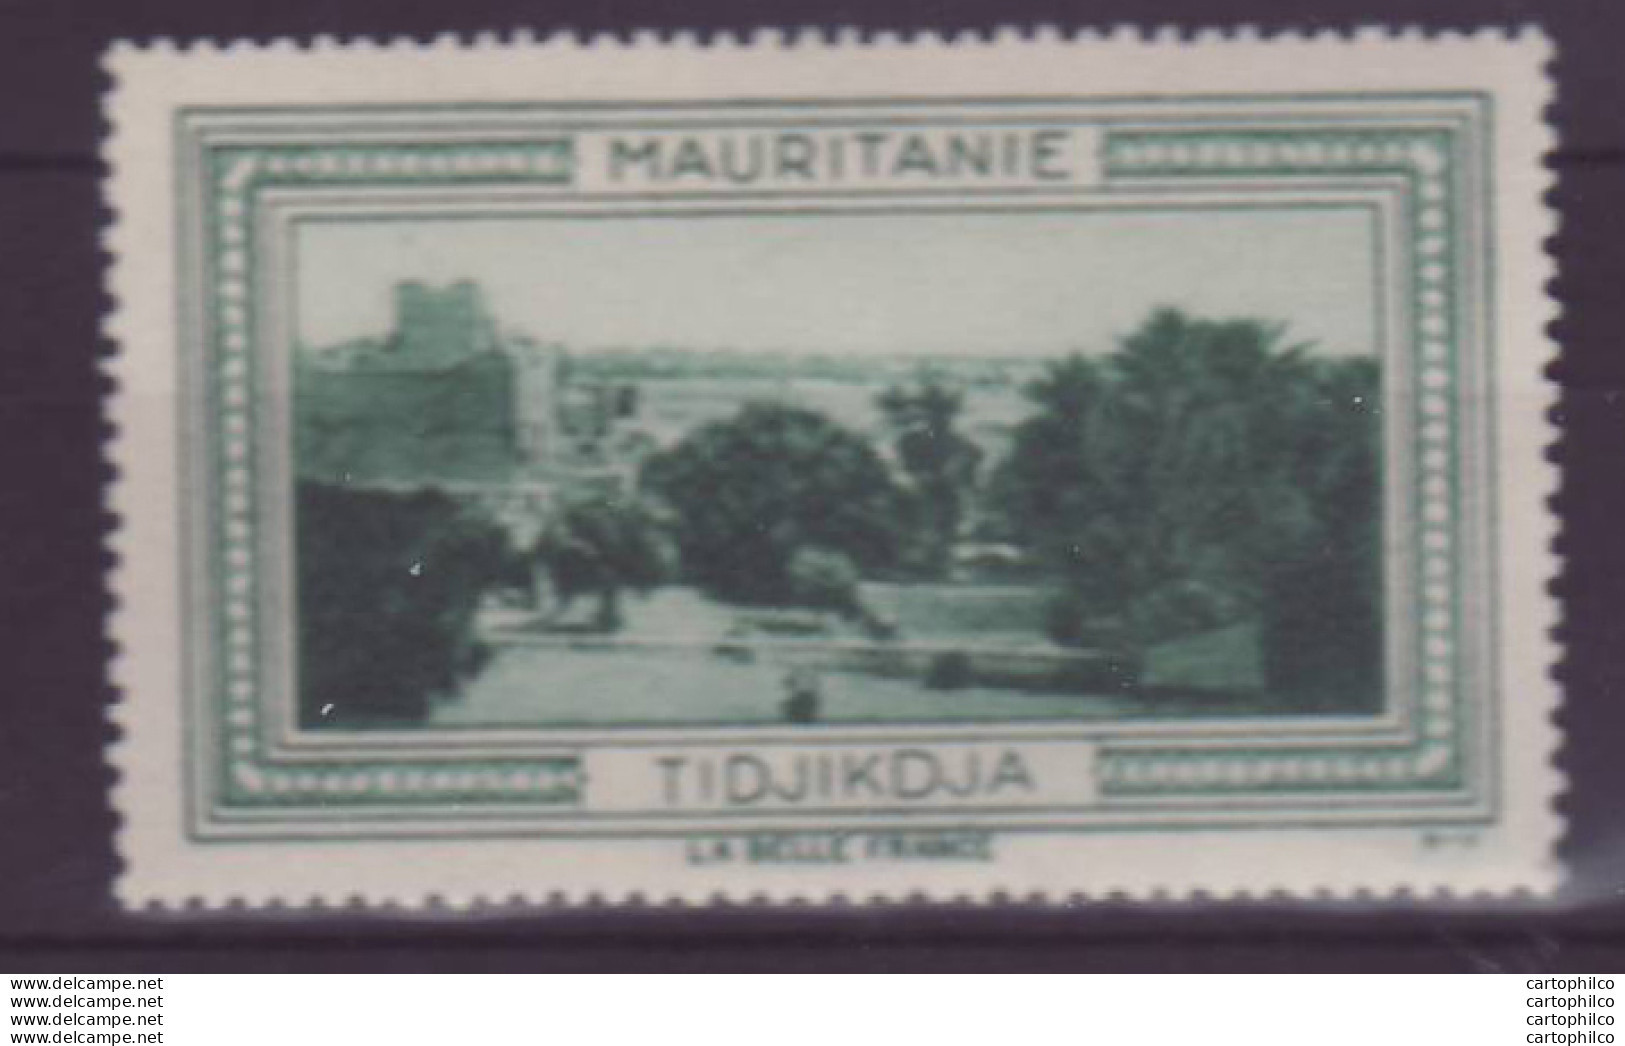 Vignette ** Mauritanie Tidjikdja - Neufs